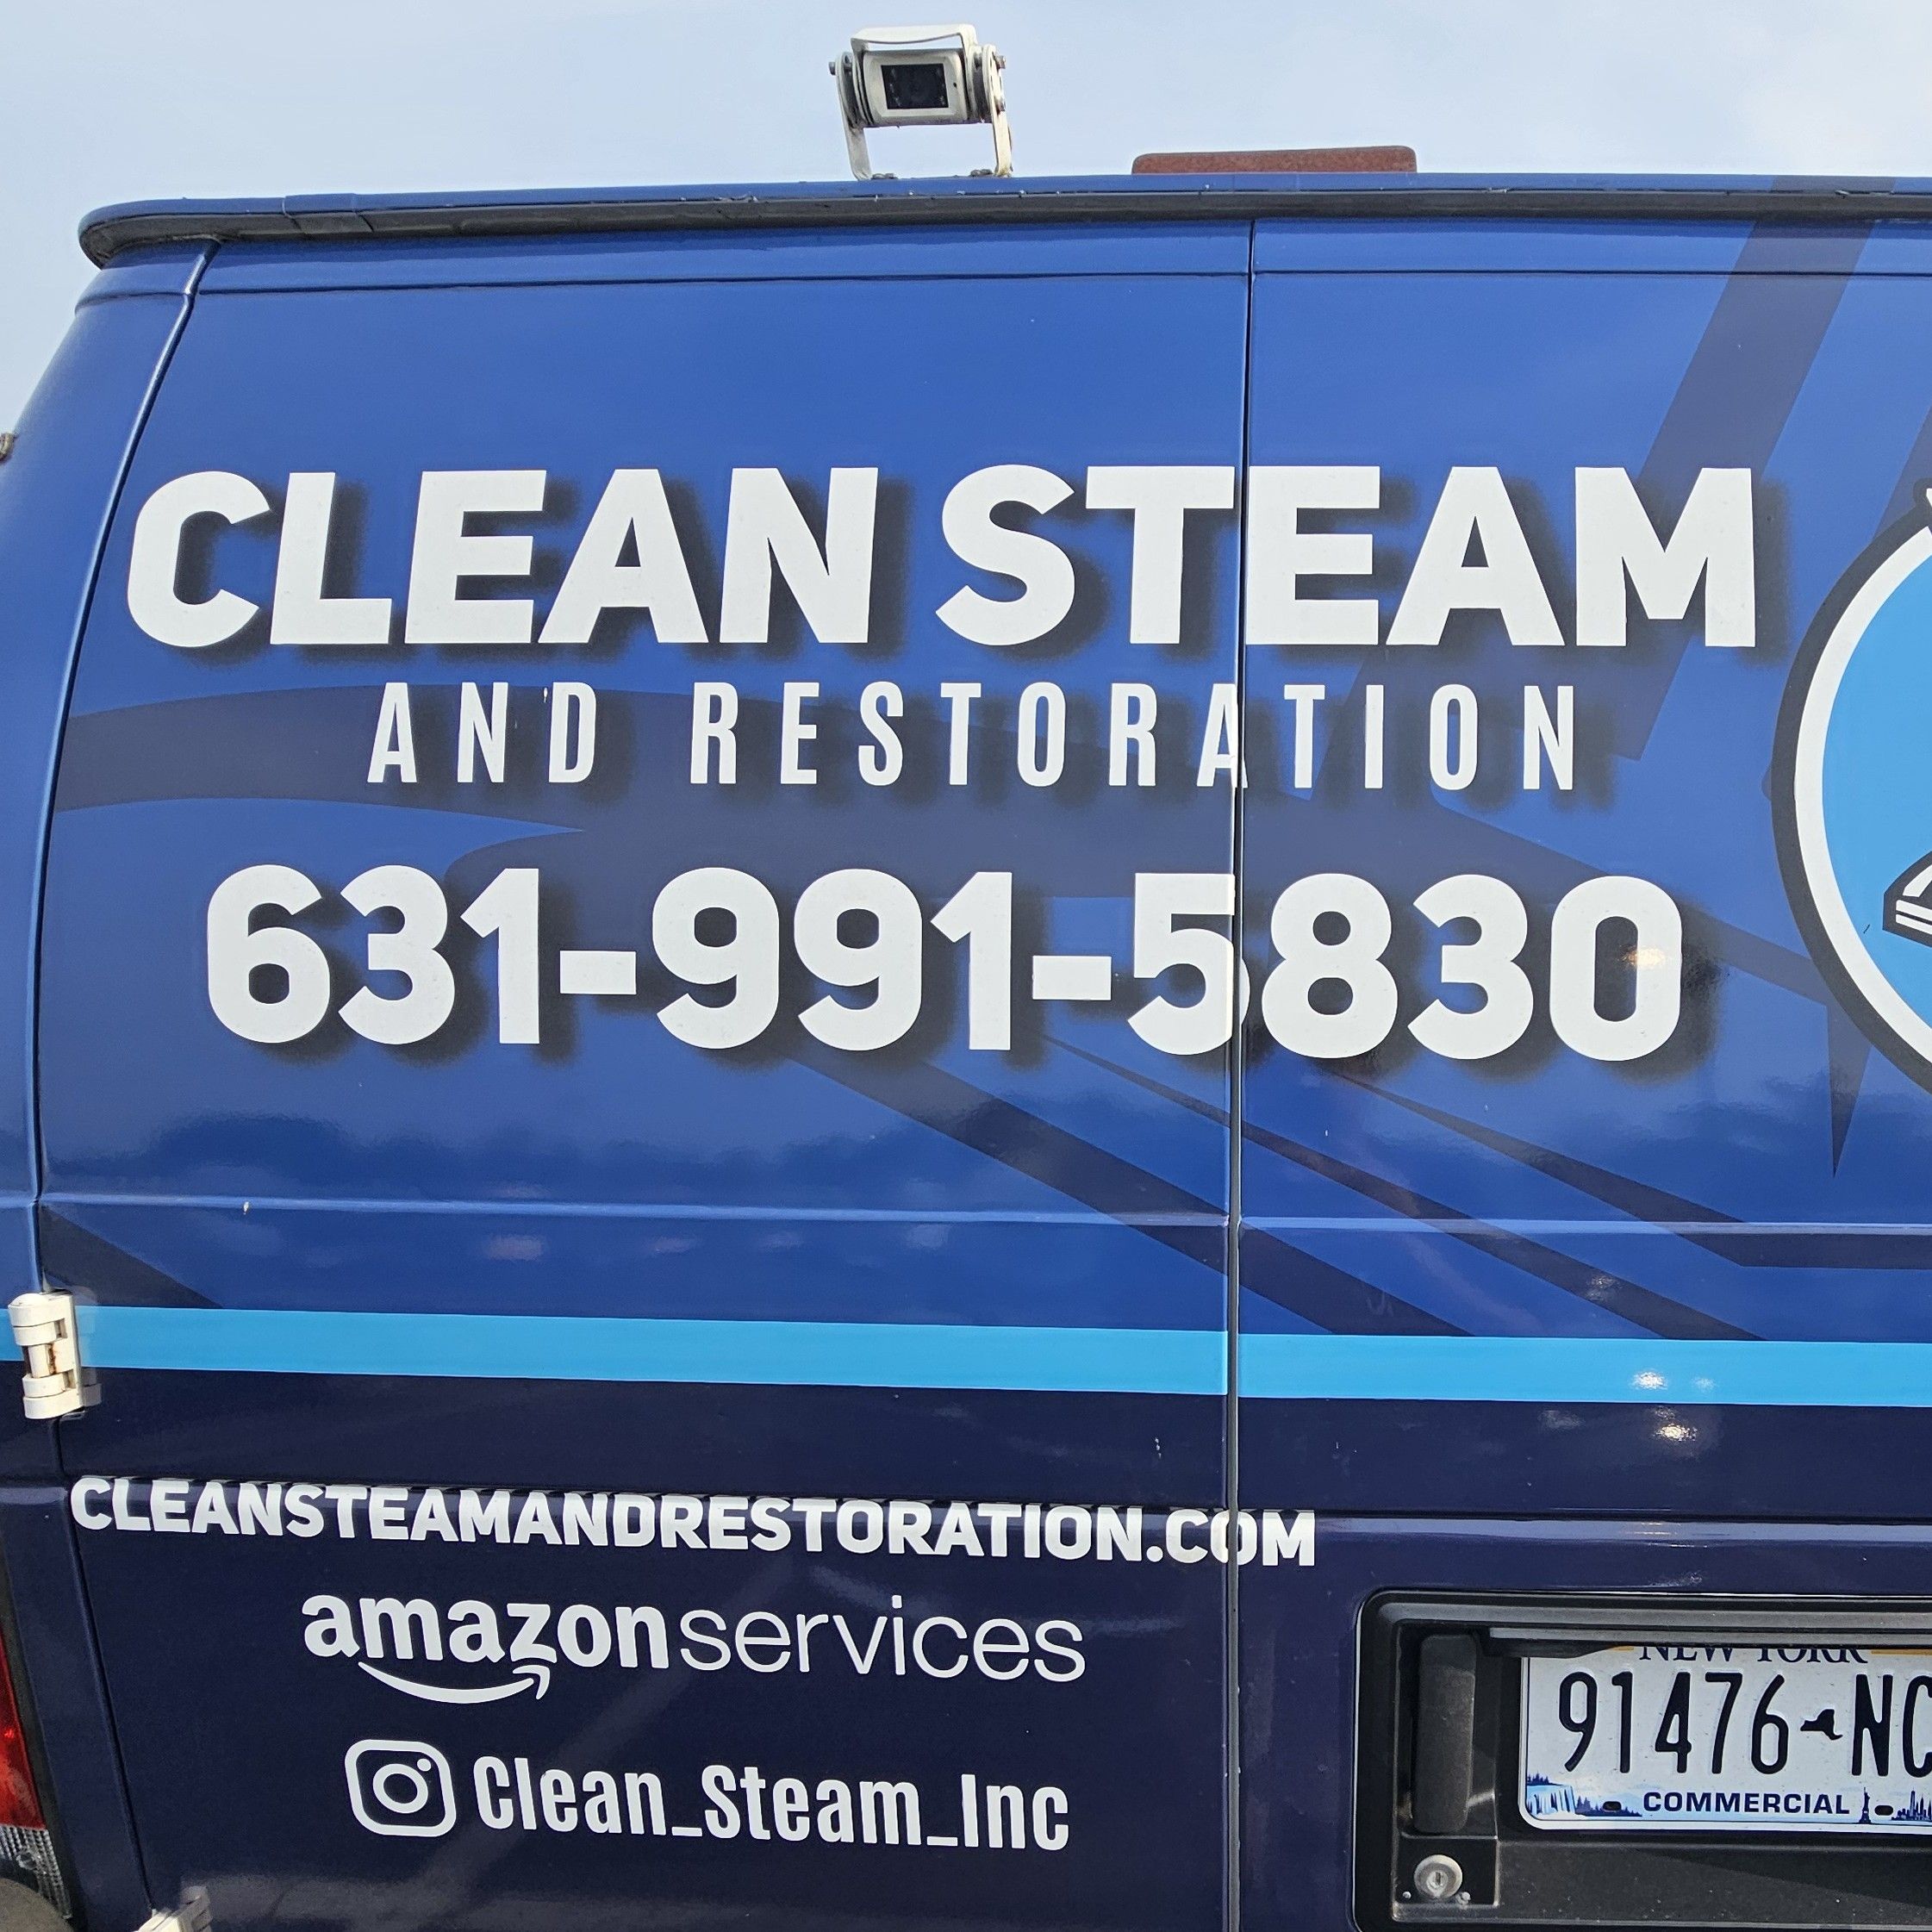 Clean Steam, West Islip, 11795